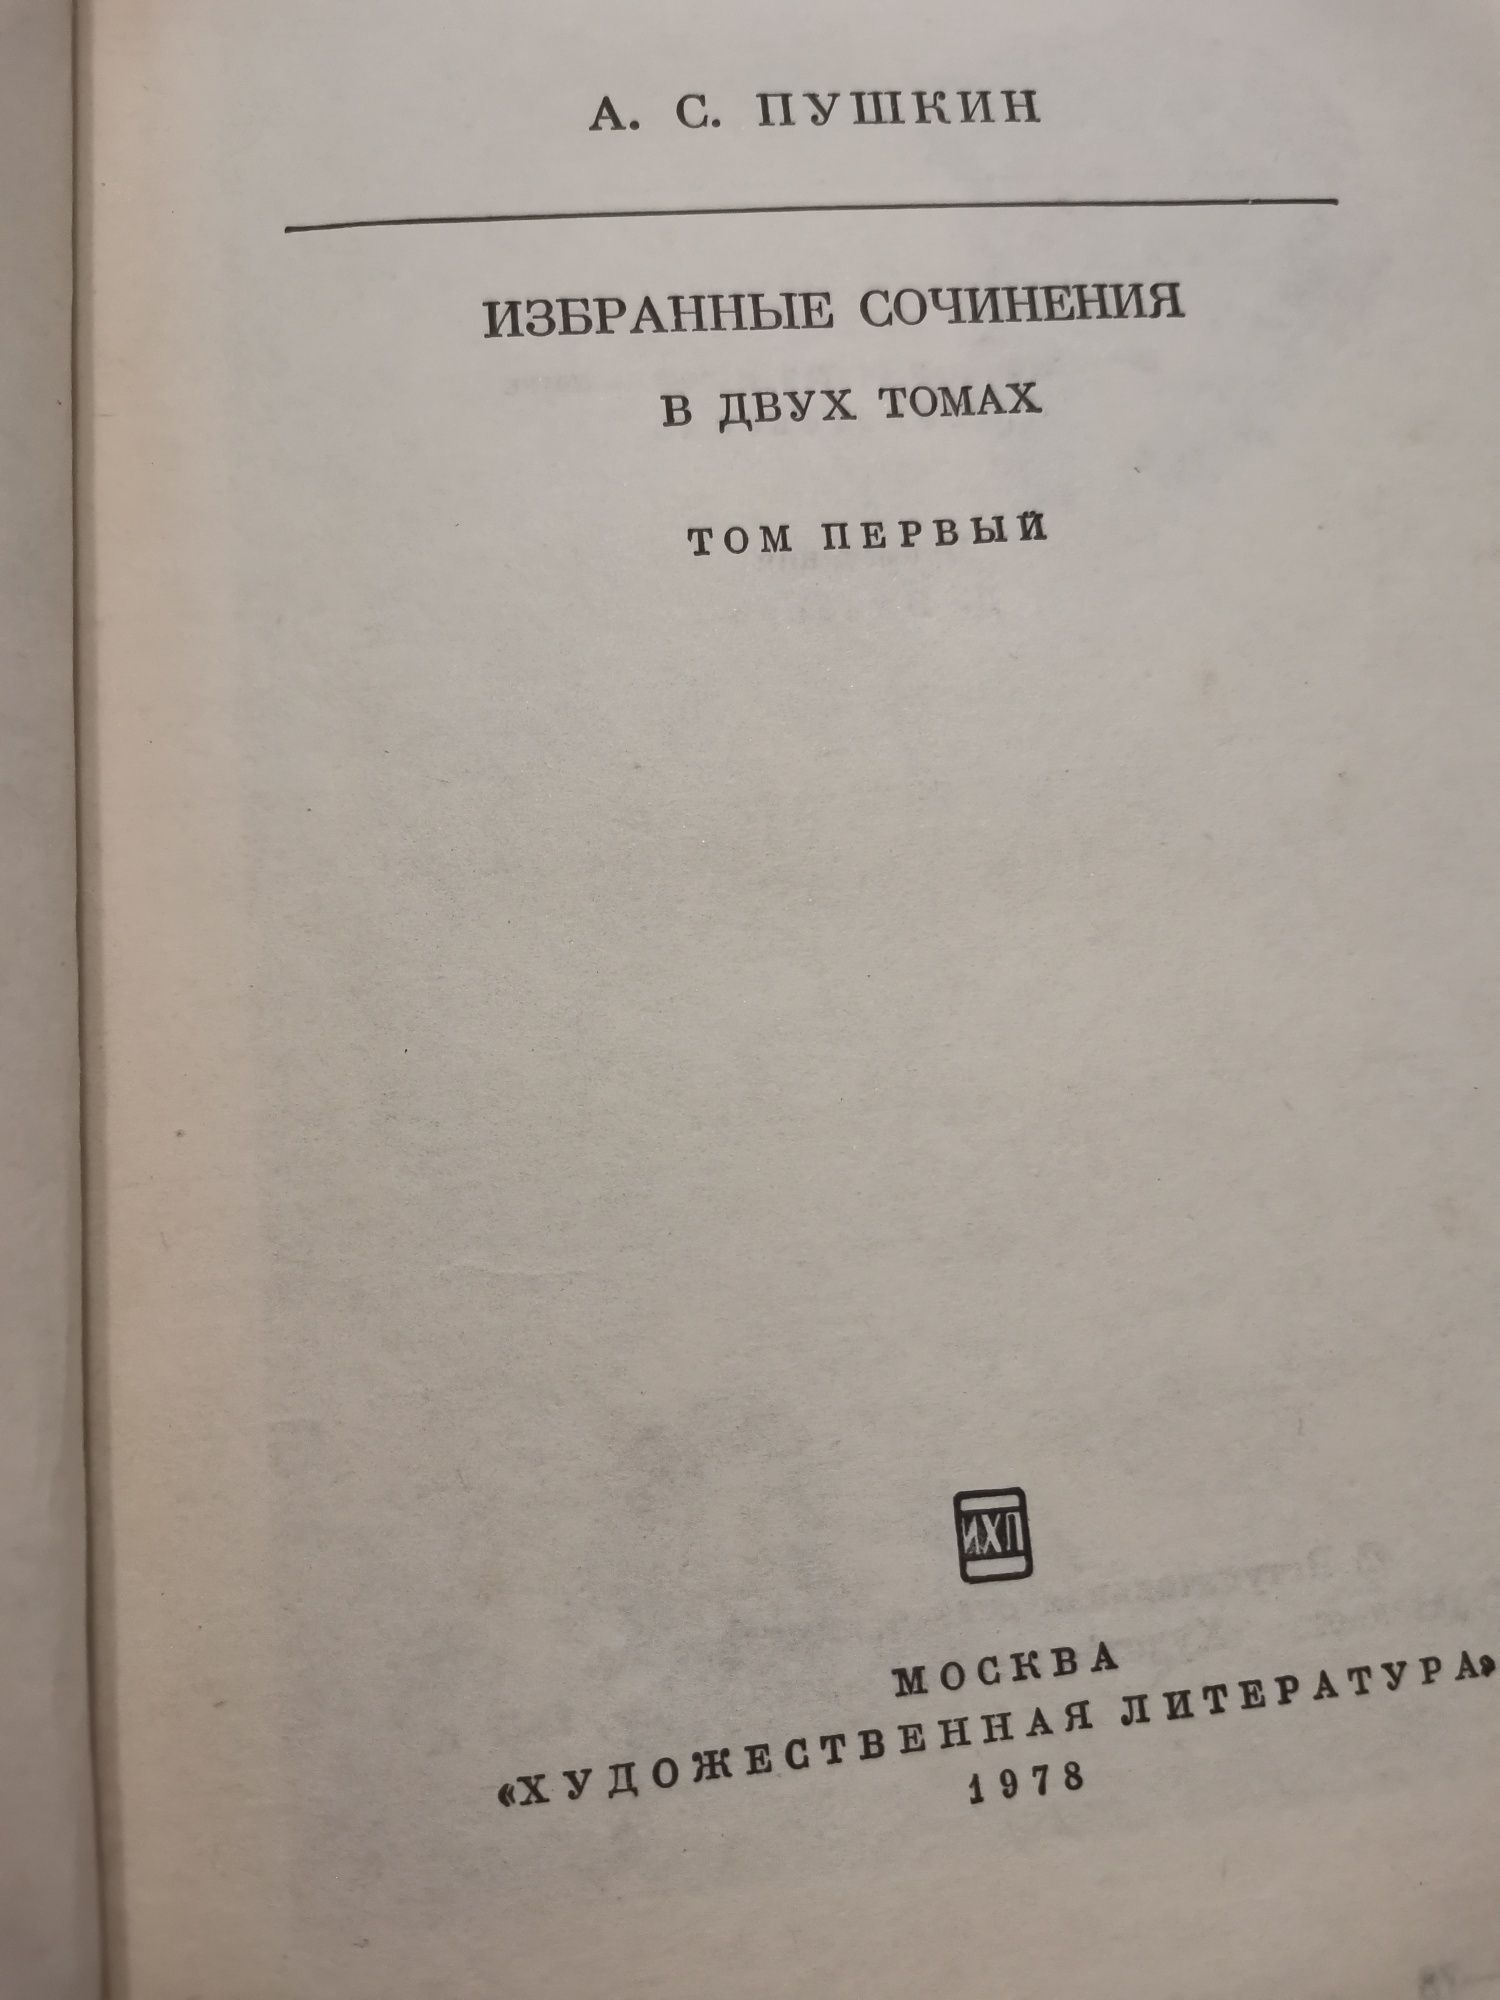 А. С. Пушкин, избранные сочинения в 2х томах.